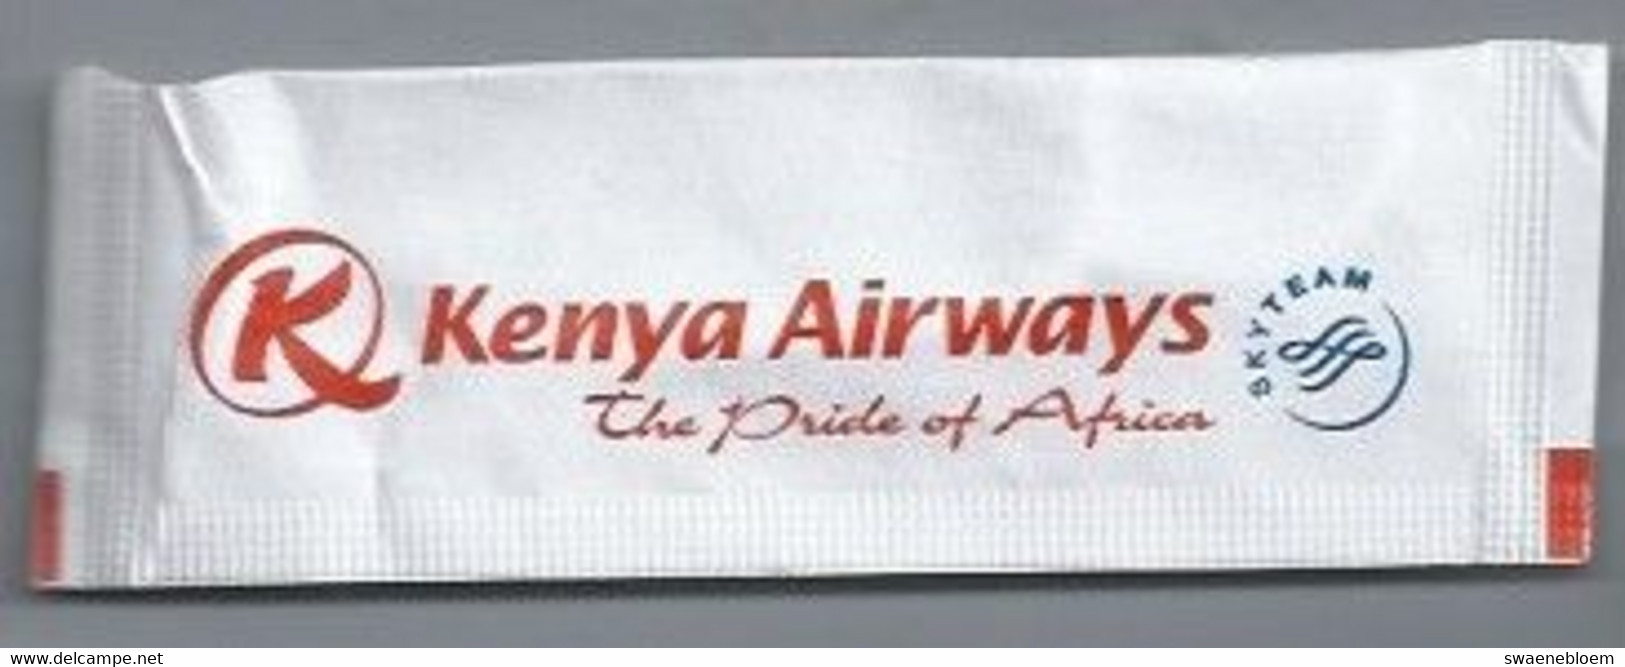 PB.- KENYA AIRWAYS. THE PRIDE OF AFRICA. SKY TEAM. Roerstokje - Swizzle Sticks